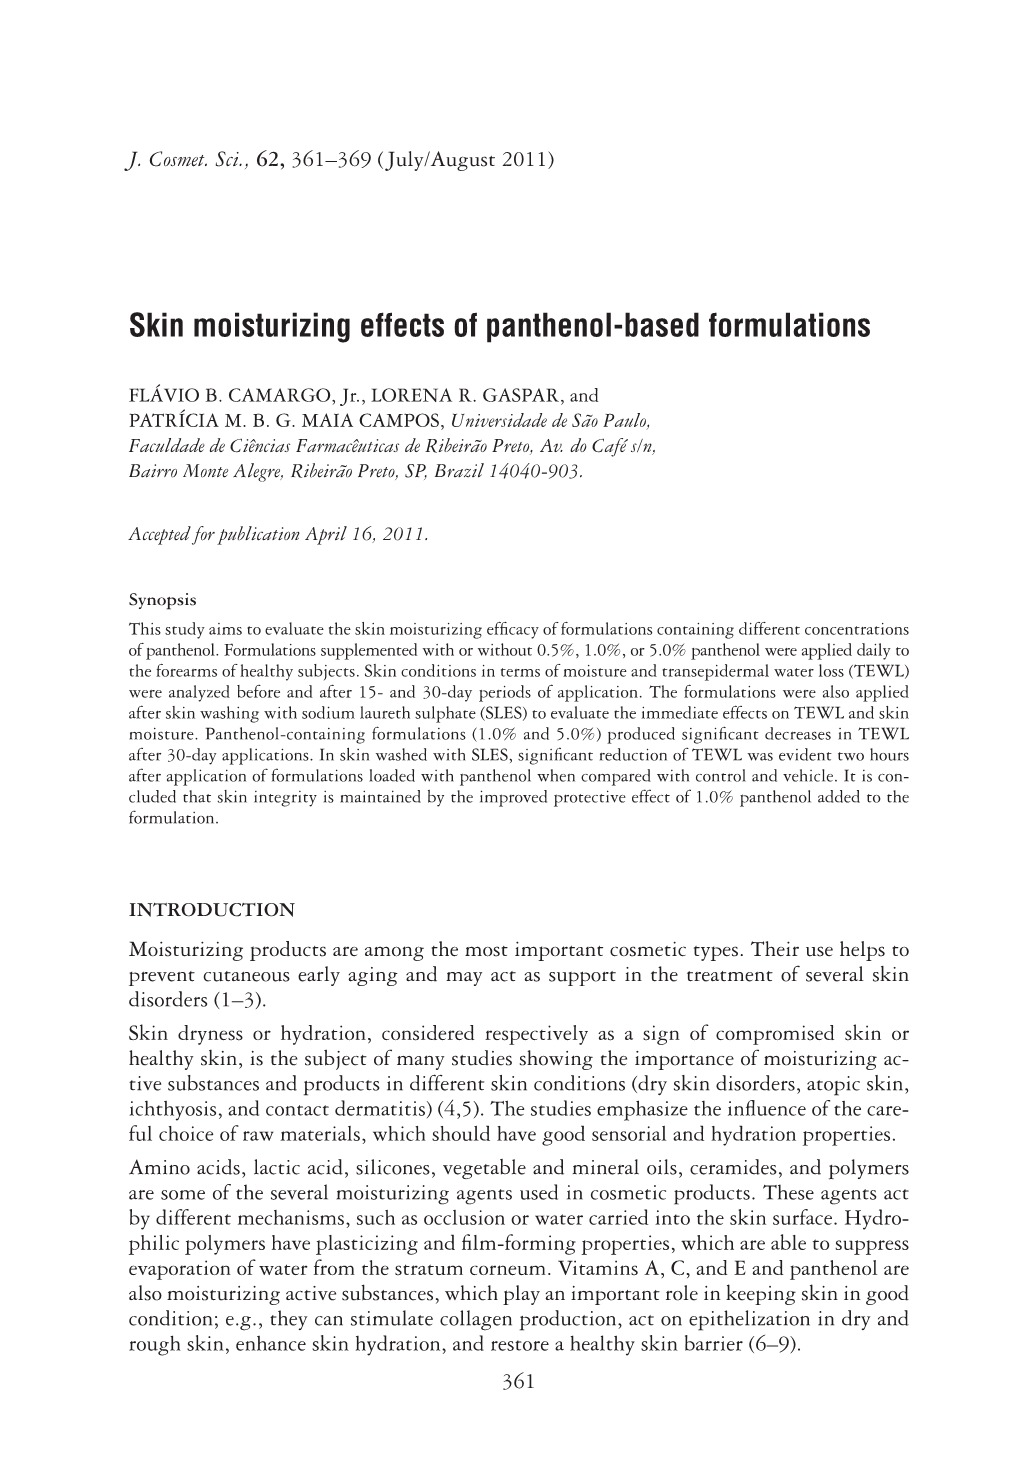 Skin Moisturizing Effects of Panthenol-Based Formulations